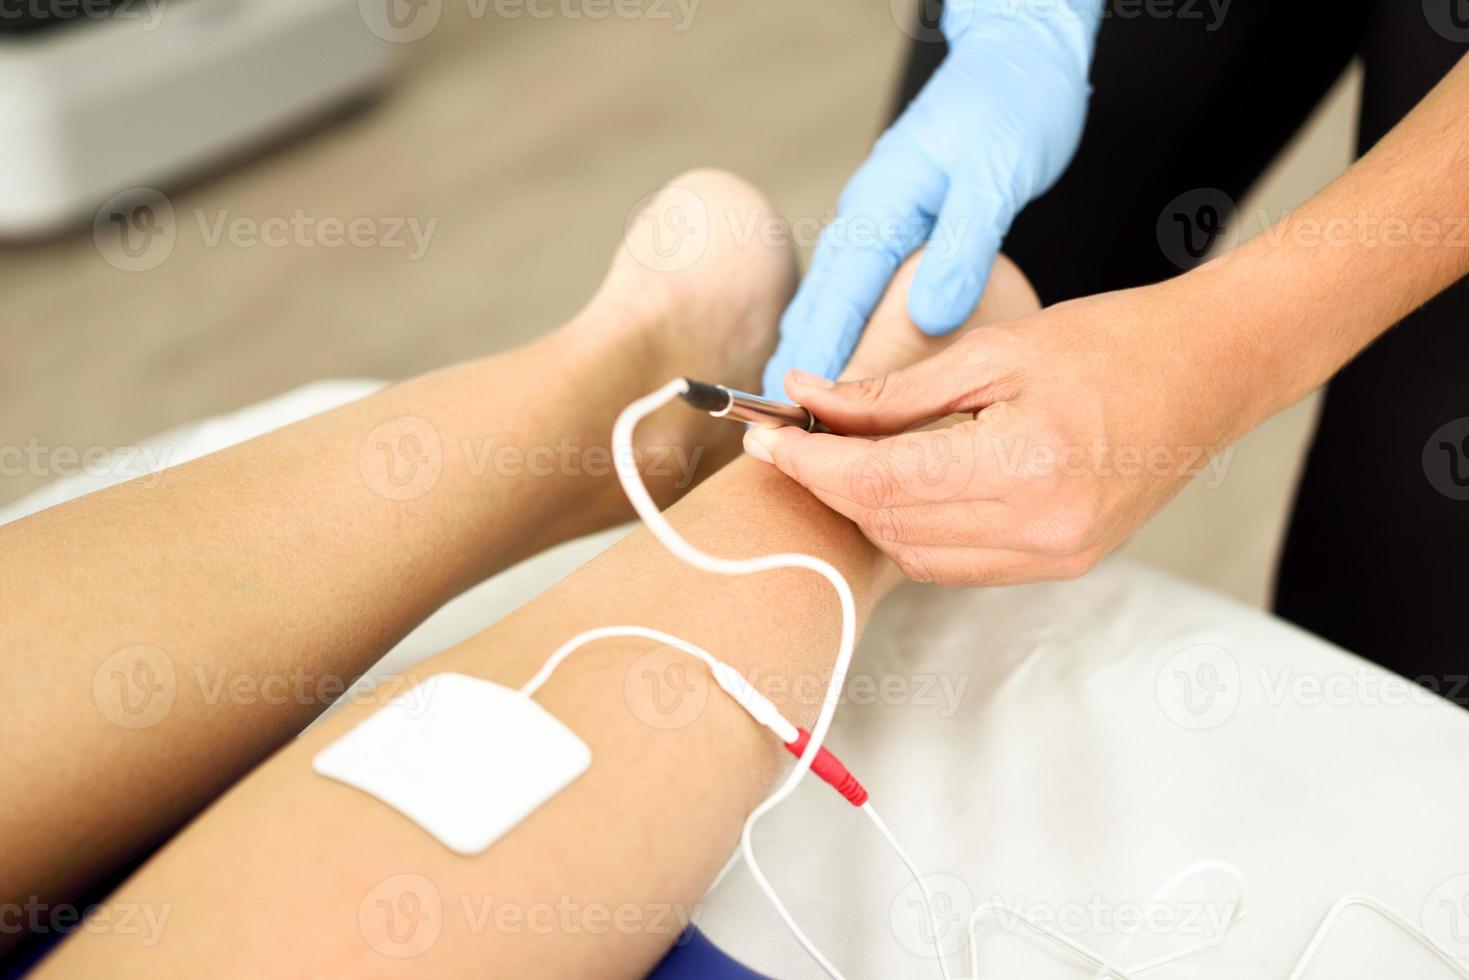 Elektroakupunktur trocken mit Nadel am weiblichen Knöchel. foto